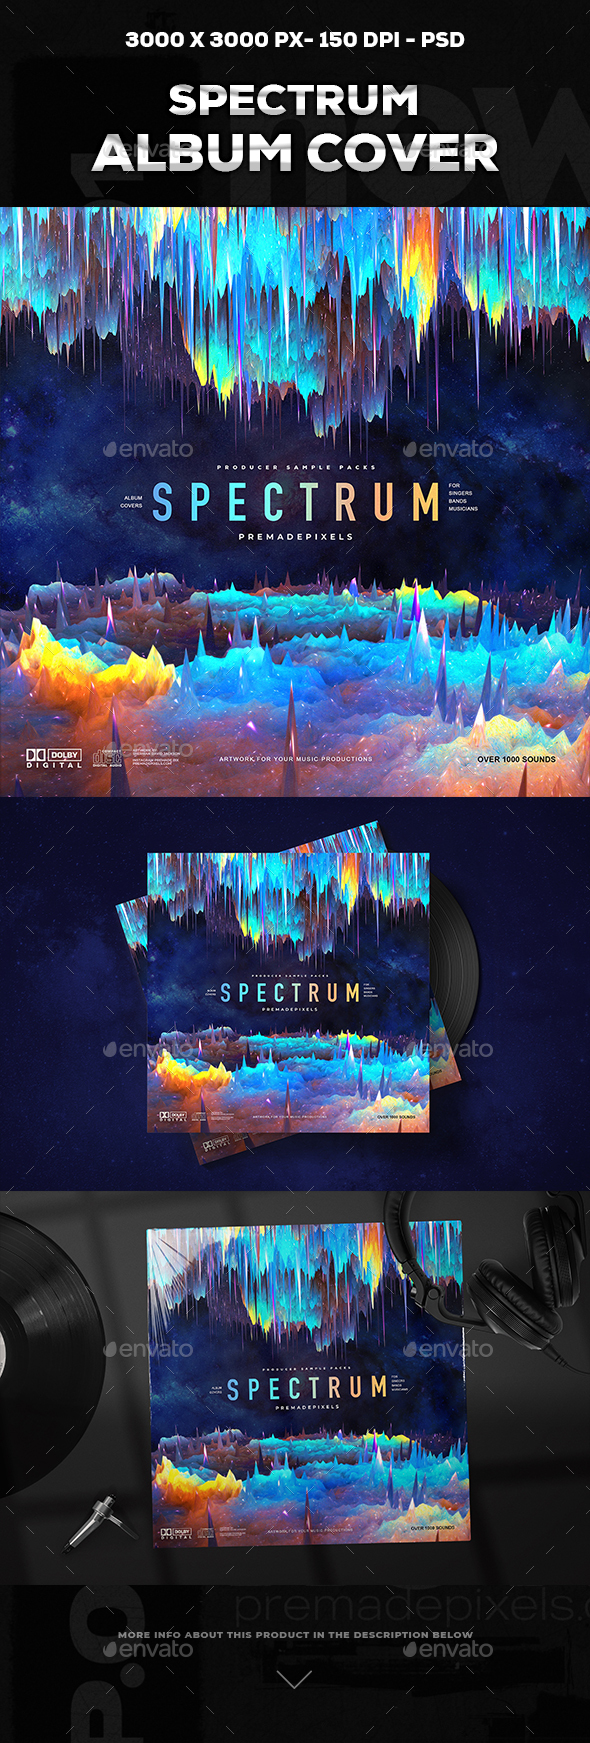 [DOWNLOAD]Spectrum Album Cover Art